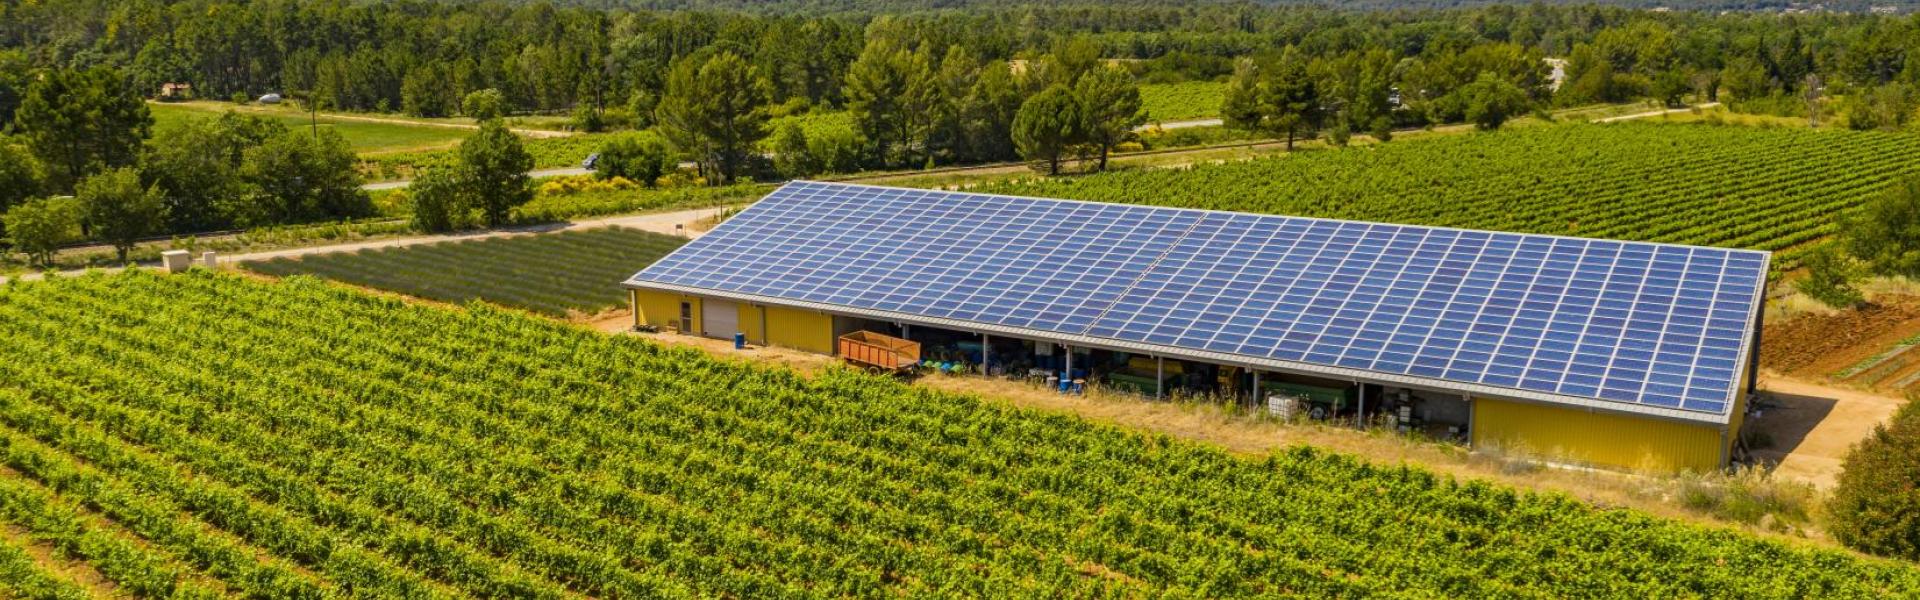 Hangar photovoltaïque - Panneaux solaires - Solutions d'énergies renouvelables pour les agriculteurs